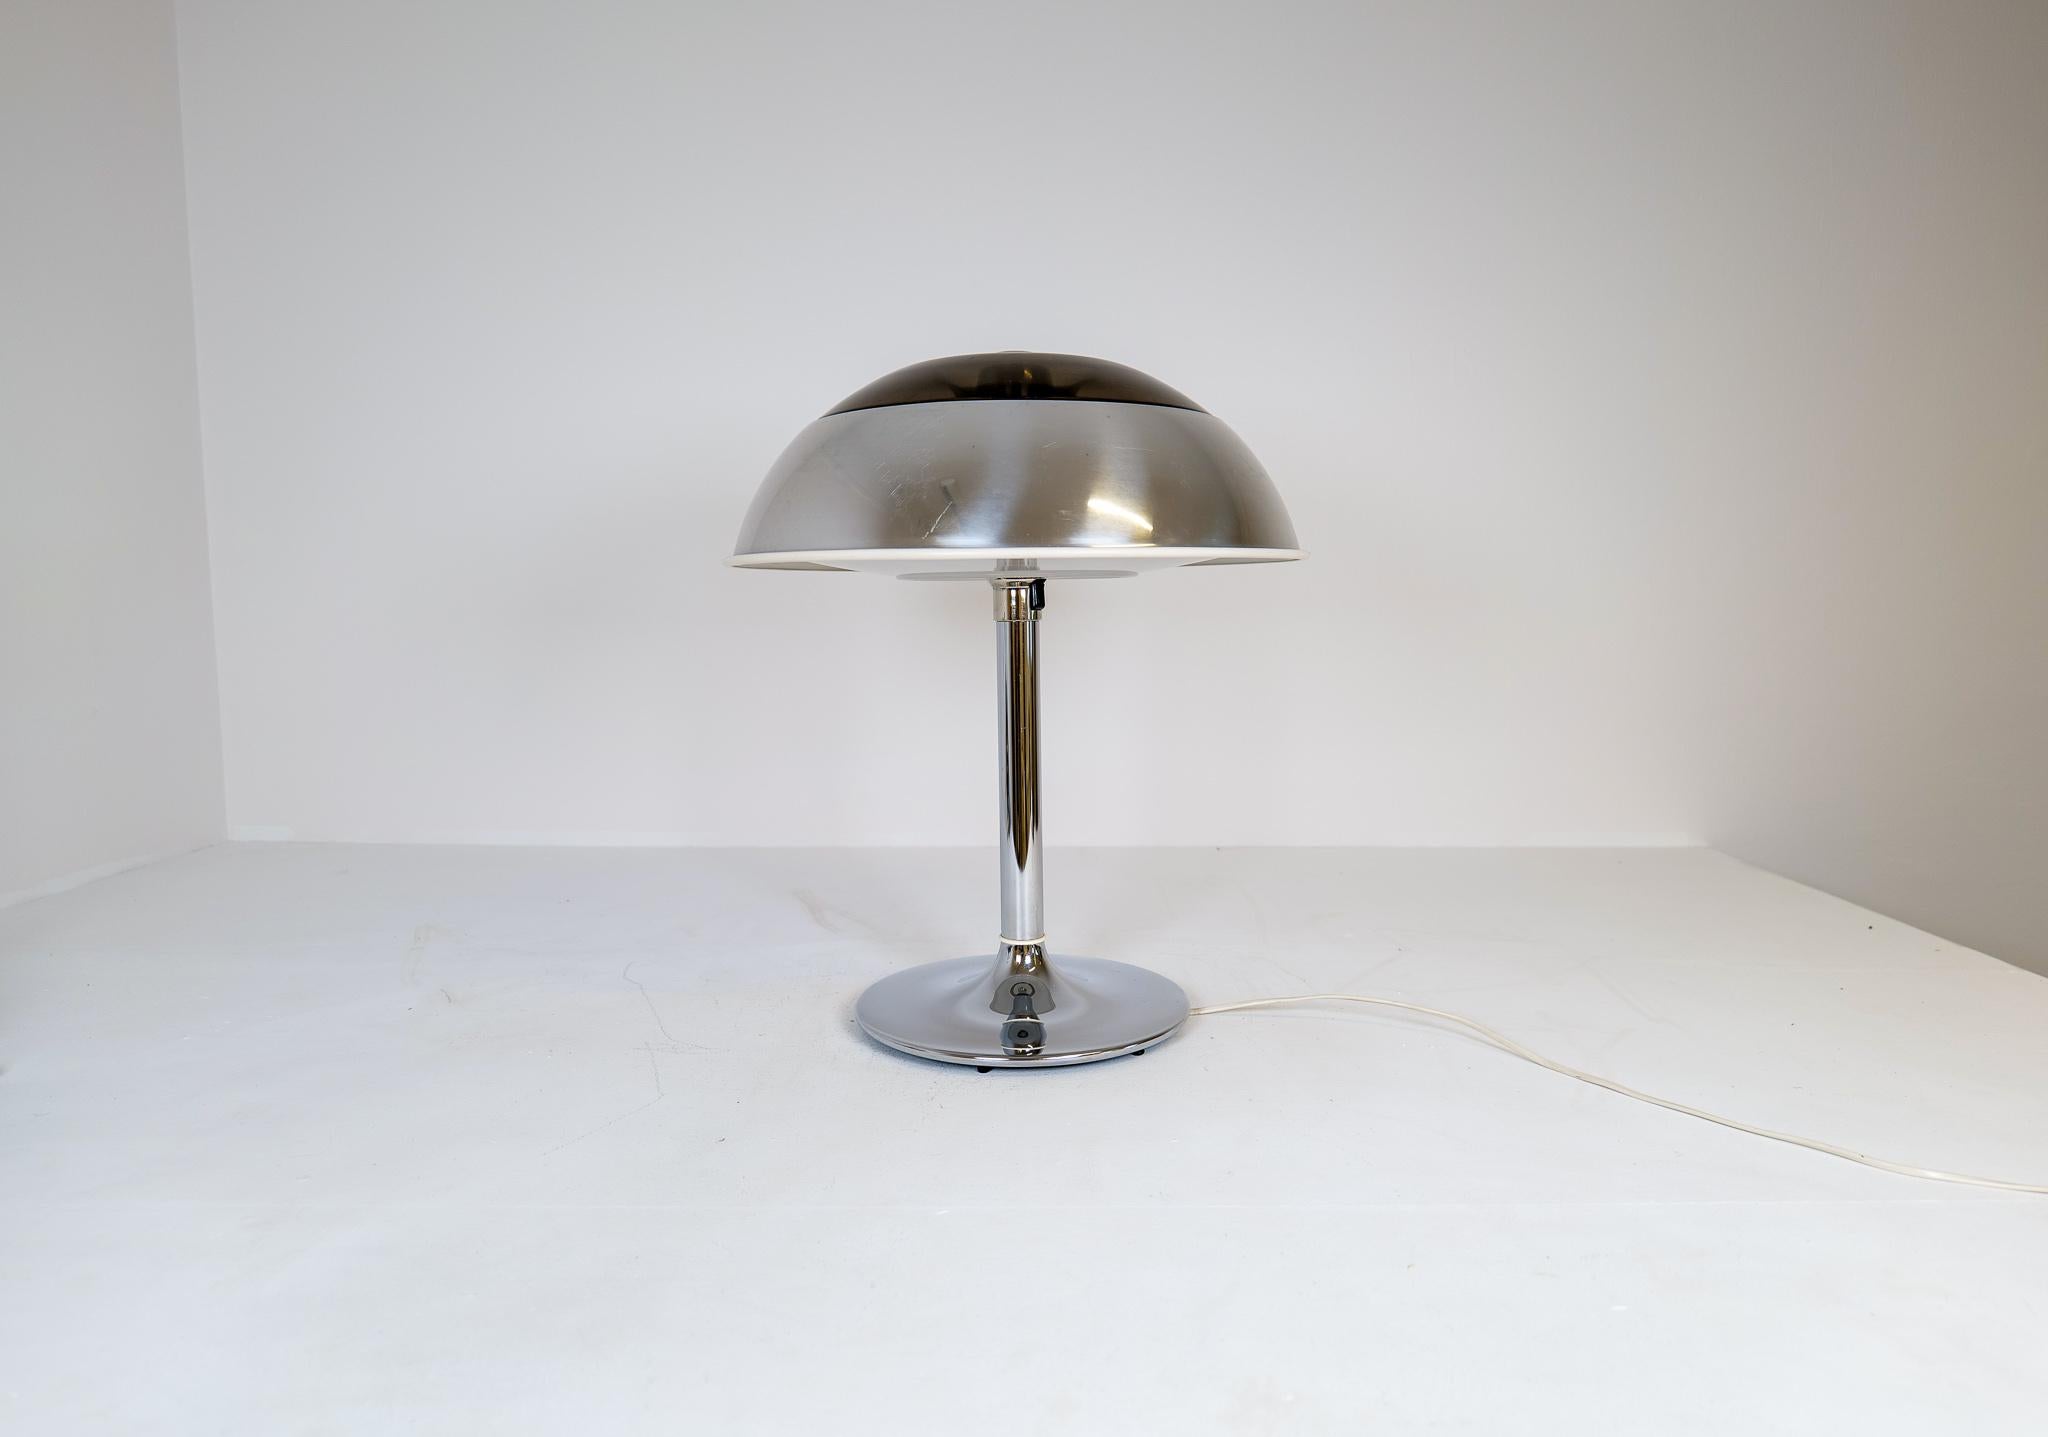 Cette grande lampe de table chromée a été fabriquée à Fagerhult Belysning en Suède, dans les années 1970.
L'abat-jour est en métal chromé et en plastique, le reste en métal chromé. Lorsqu'il est allumé, il donne une belle lumière froide. 

Bon